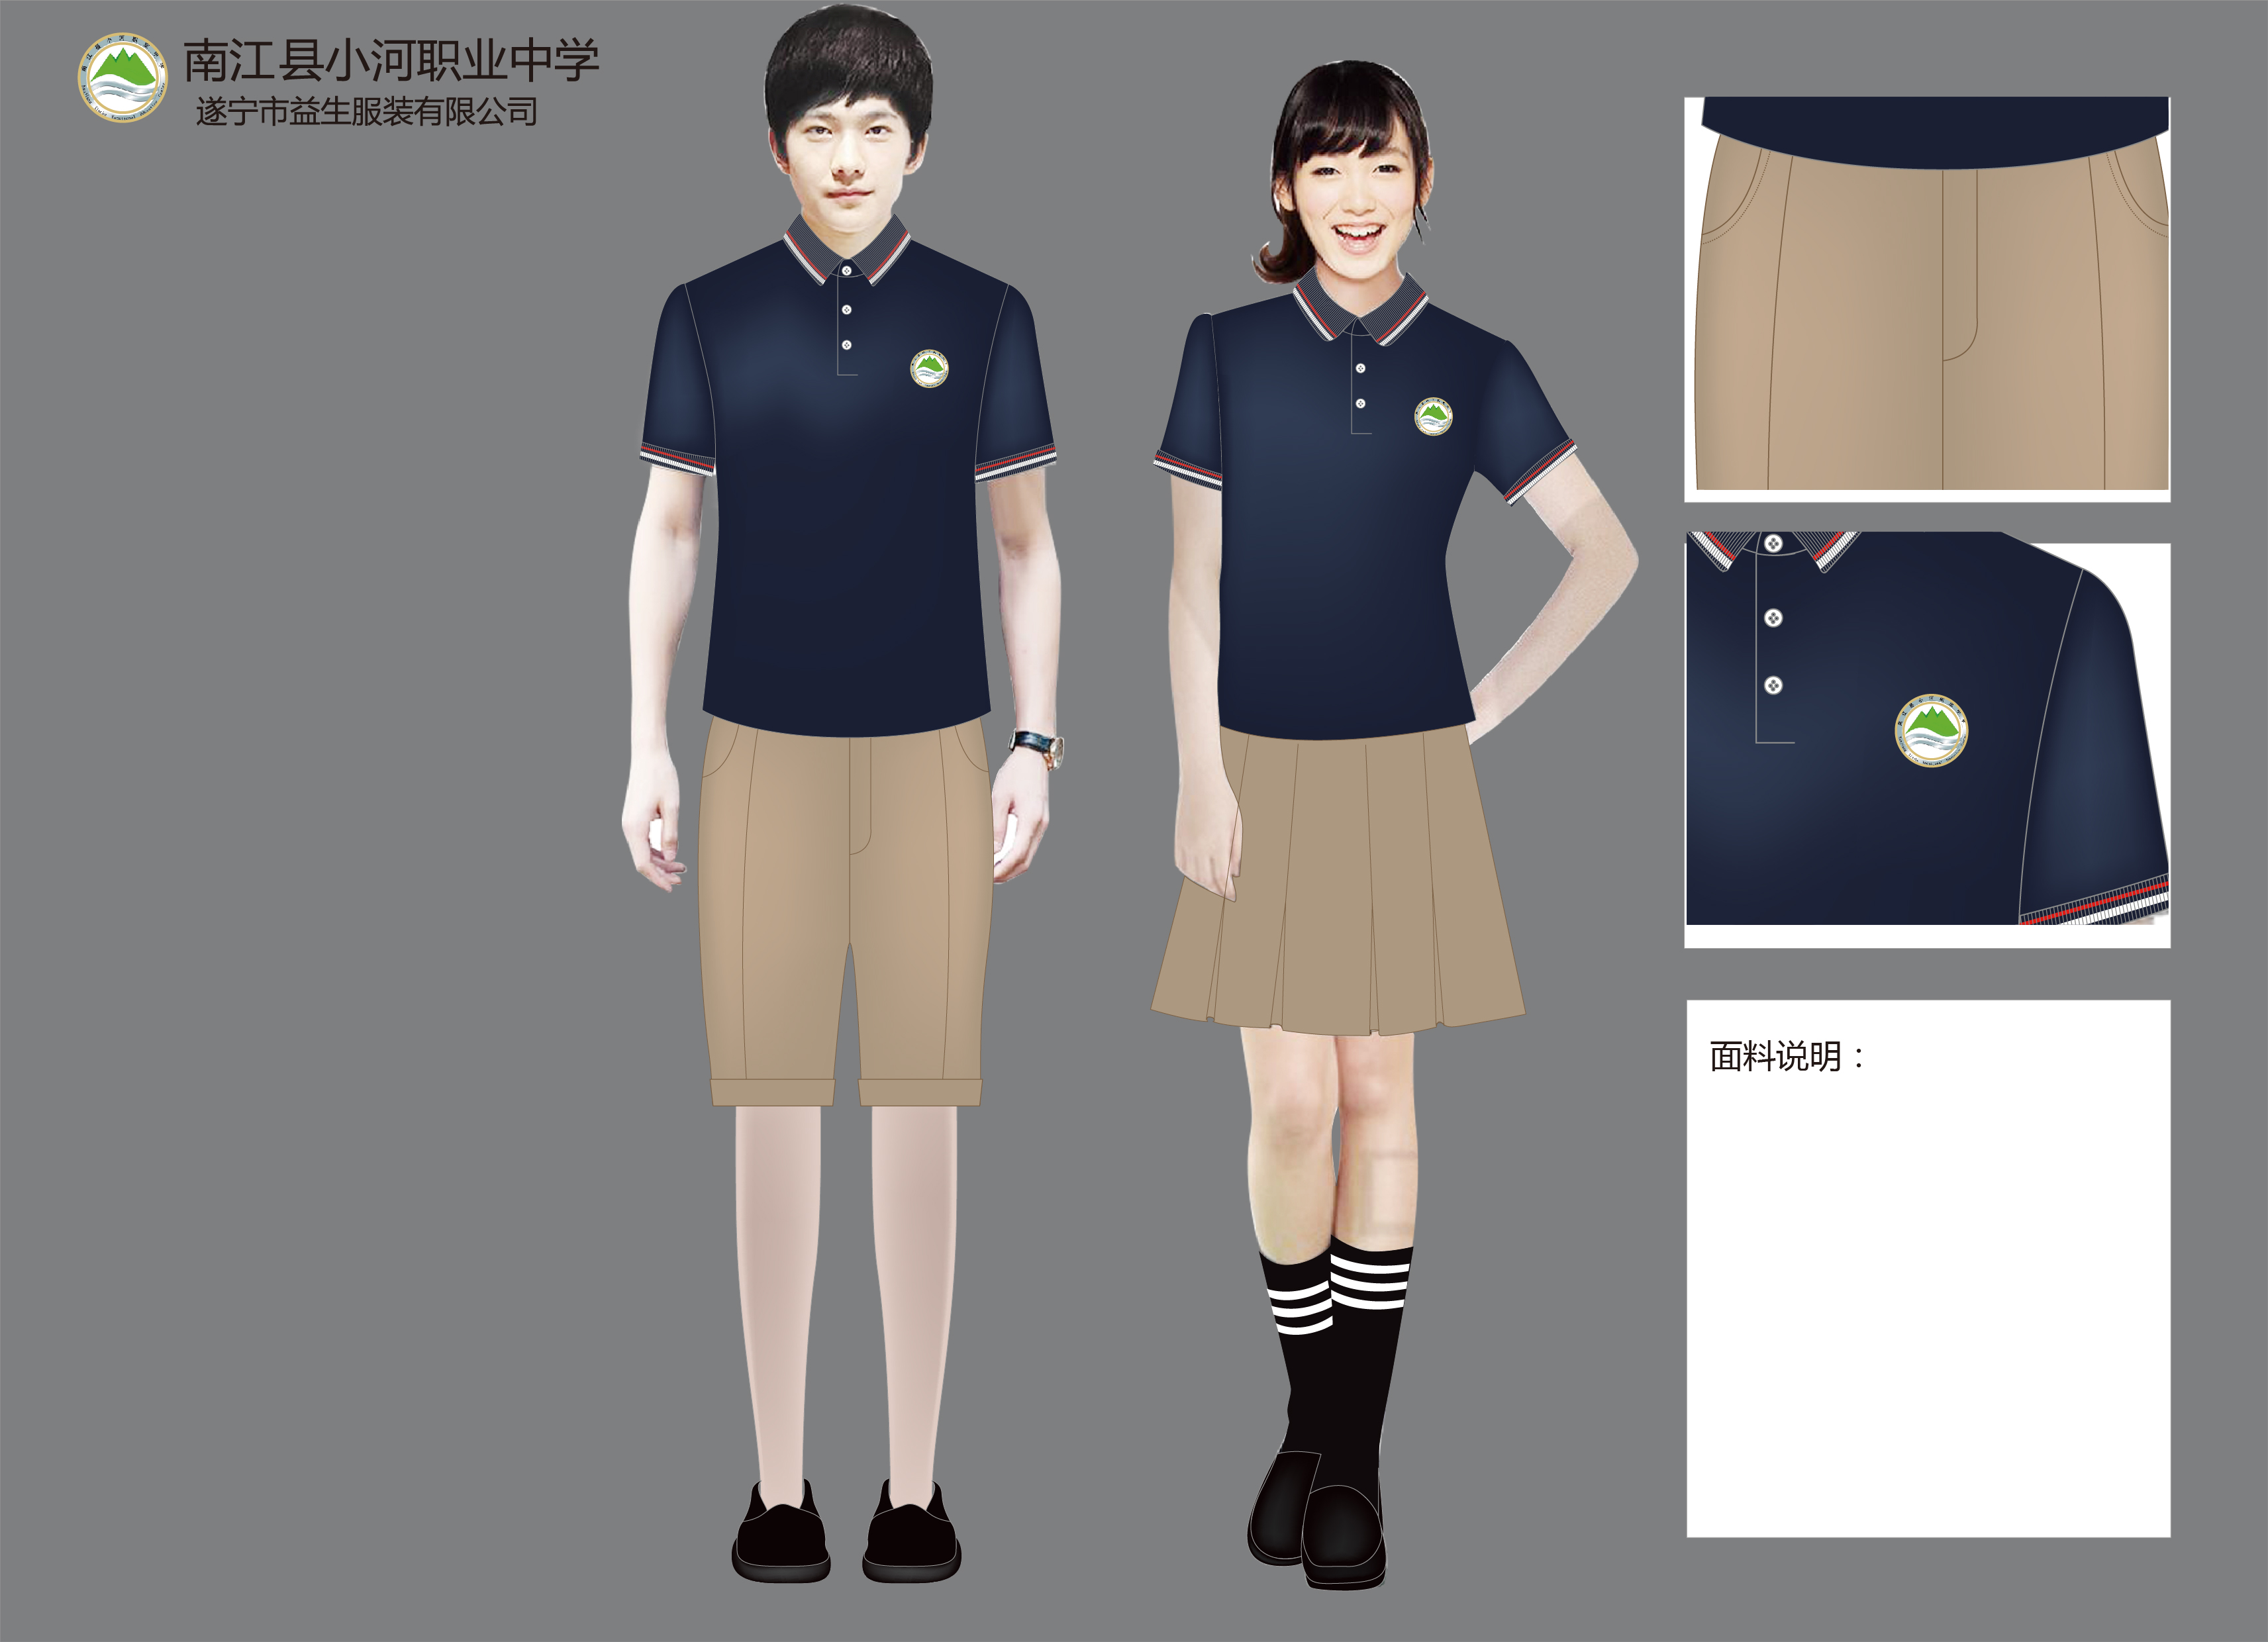 校服设计公司工作服设计工服设计企业工作服设计银行工作服装设计